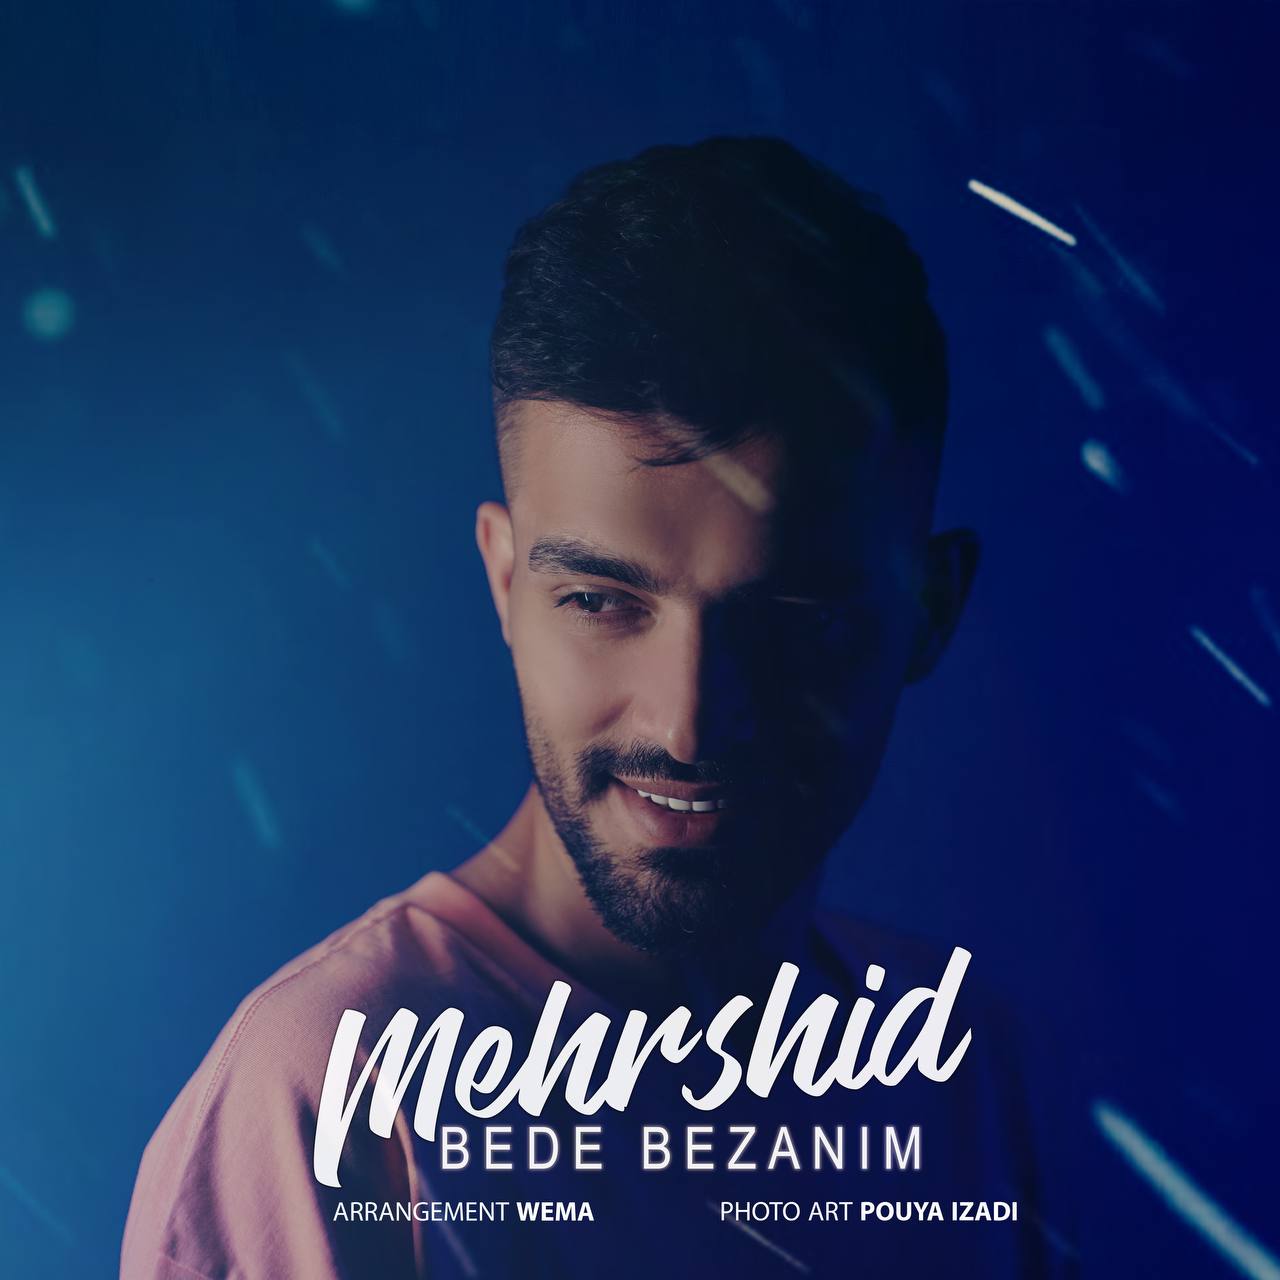  دانلود آهنگ جدید مهرشید حبیبی - بده بزنیم | Download New Music By Mehrshid Habibi - Bede Bezanim